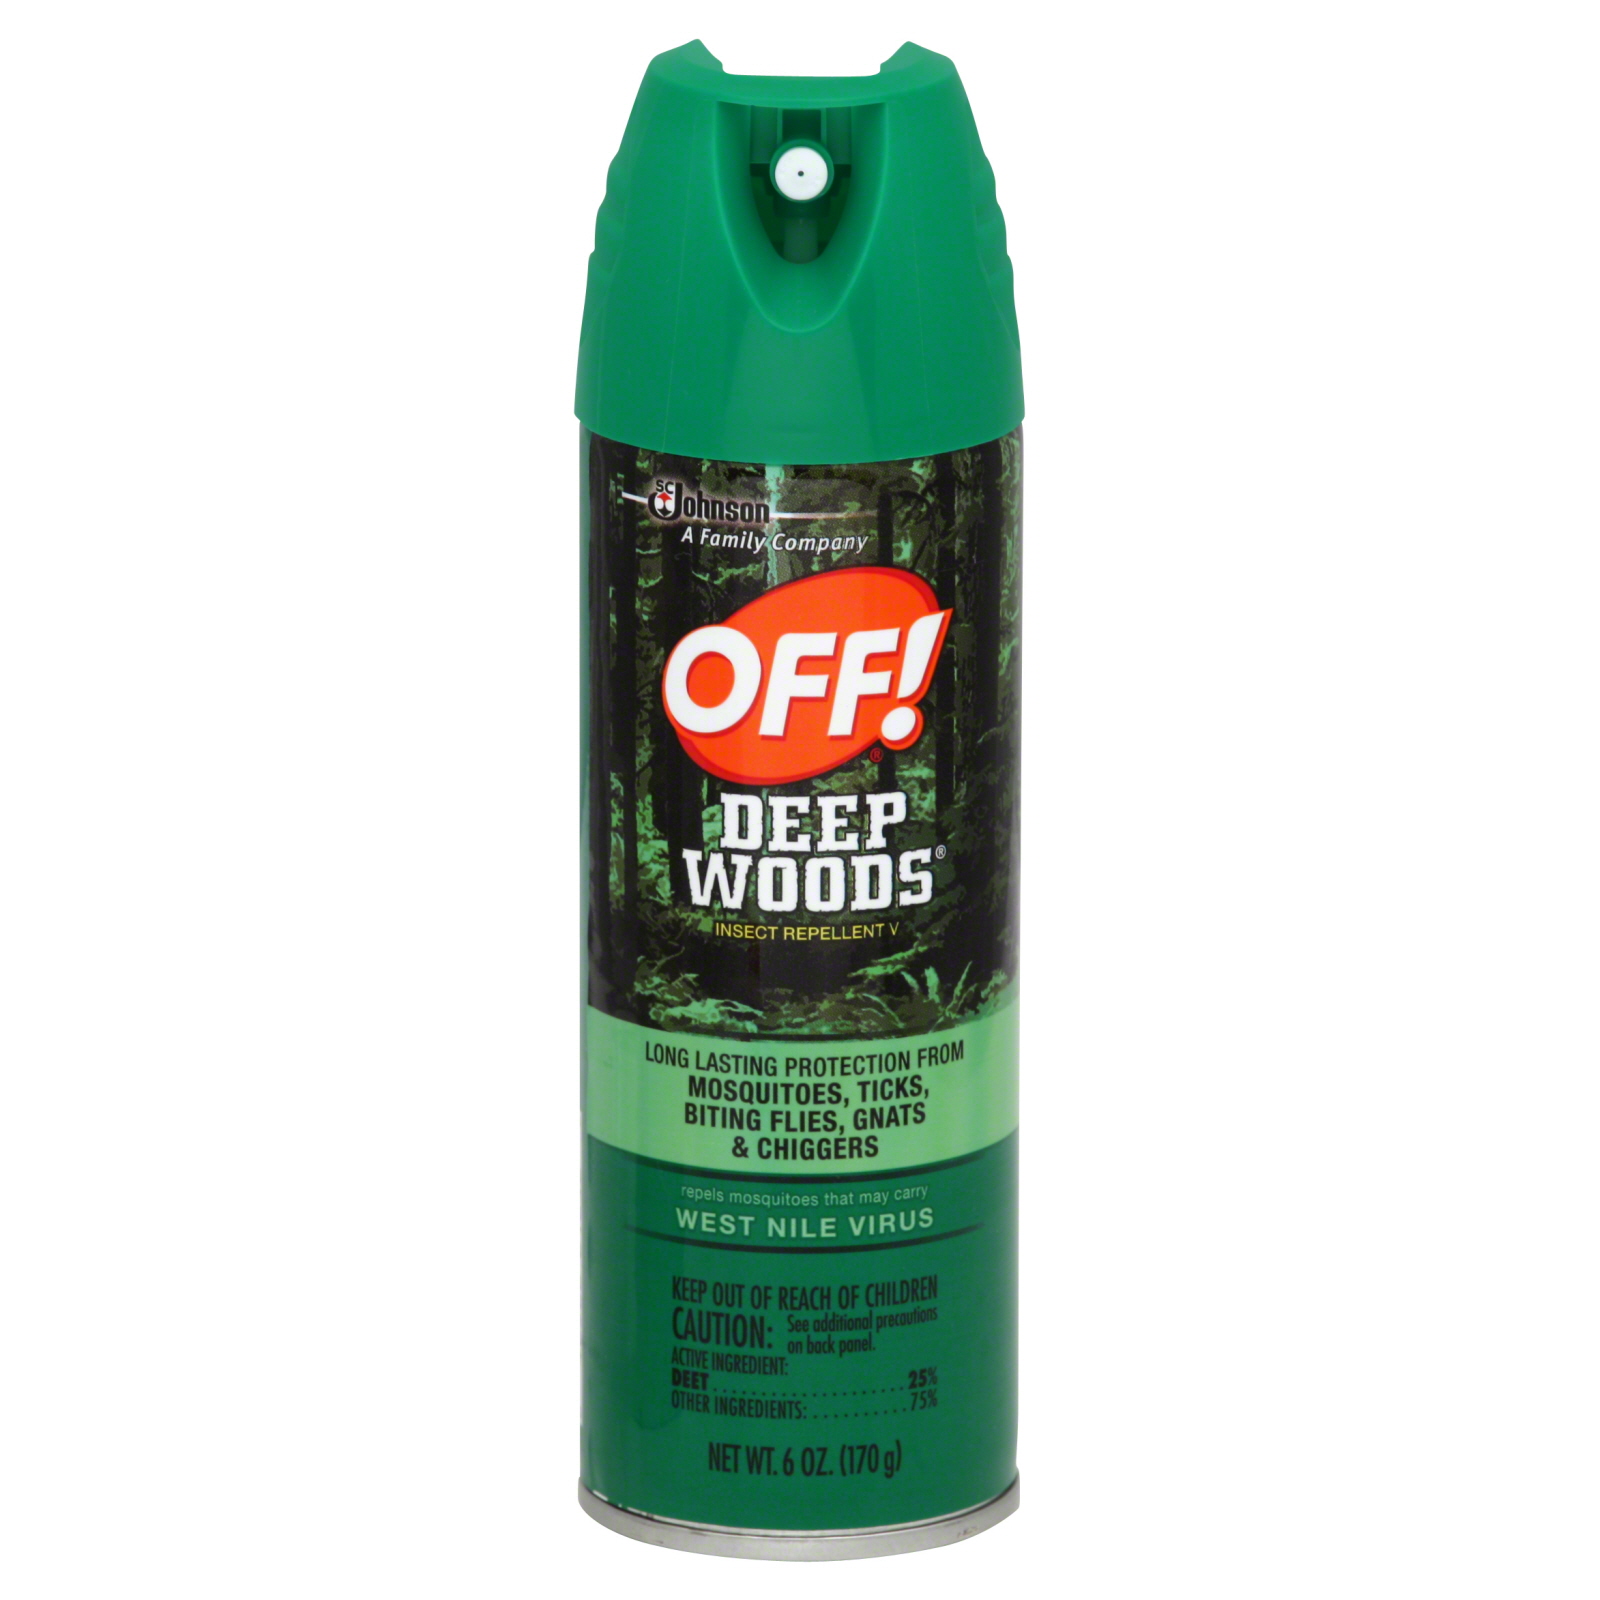 Off! Deep Woods Insect Repellent V, 6 fl oz (170 g)